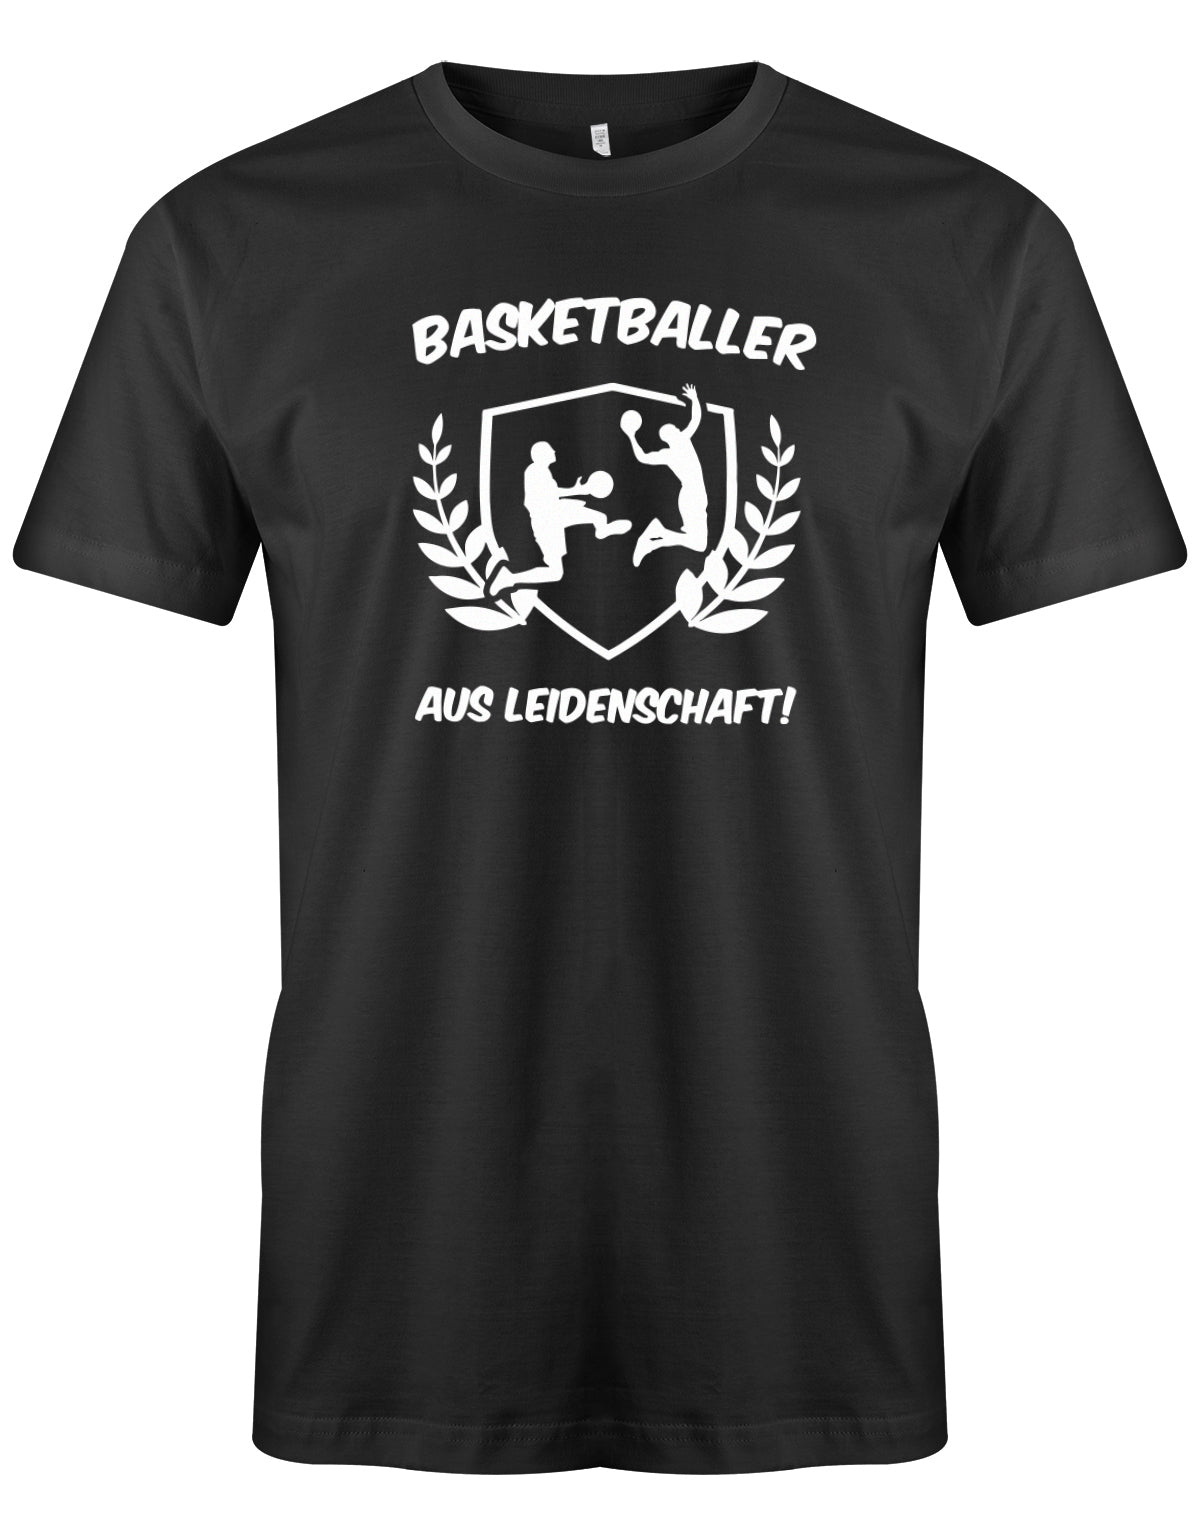 herren-shirt-schwarz8bfxoS93aVuF9